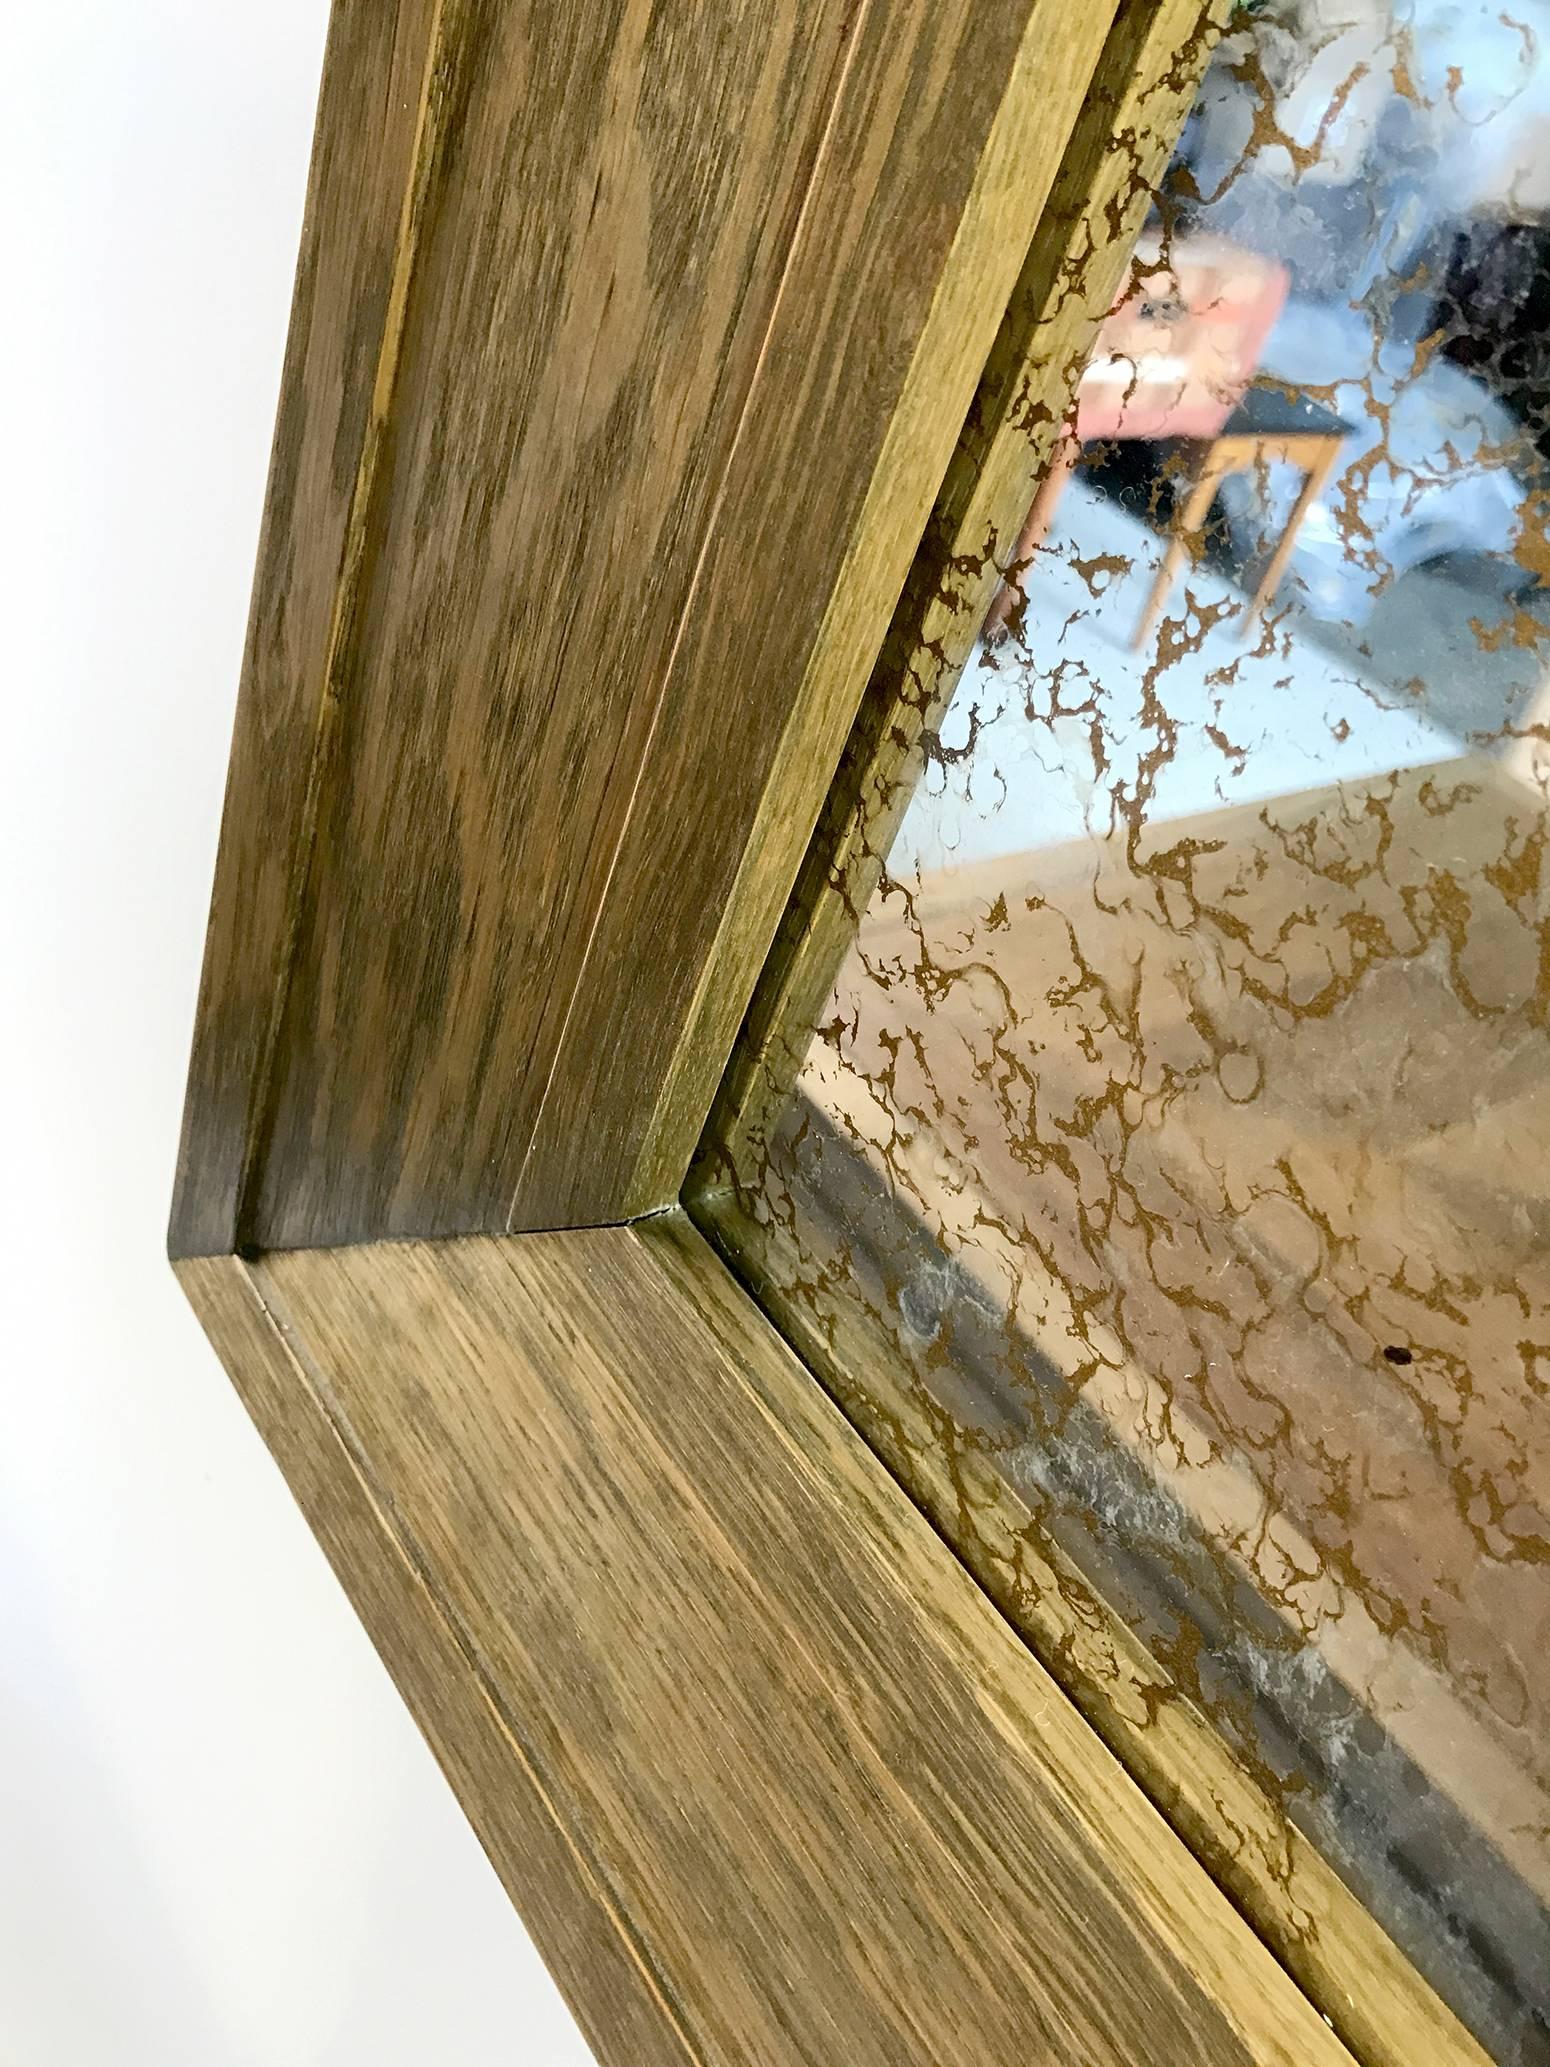 Spiegel geformten Rahmen Eiche getönten grauen Bronze, Tönung Effekt Eis von Philippe Delzers für Elitis. Einzigartiges Stück, nie bearbeitet. 
Signiert auf der Rückseite, Echtheitszertifikat des Künstlers.
Persönliche Sammlung des Künstlers,